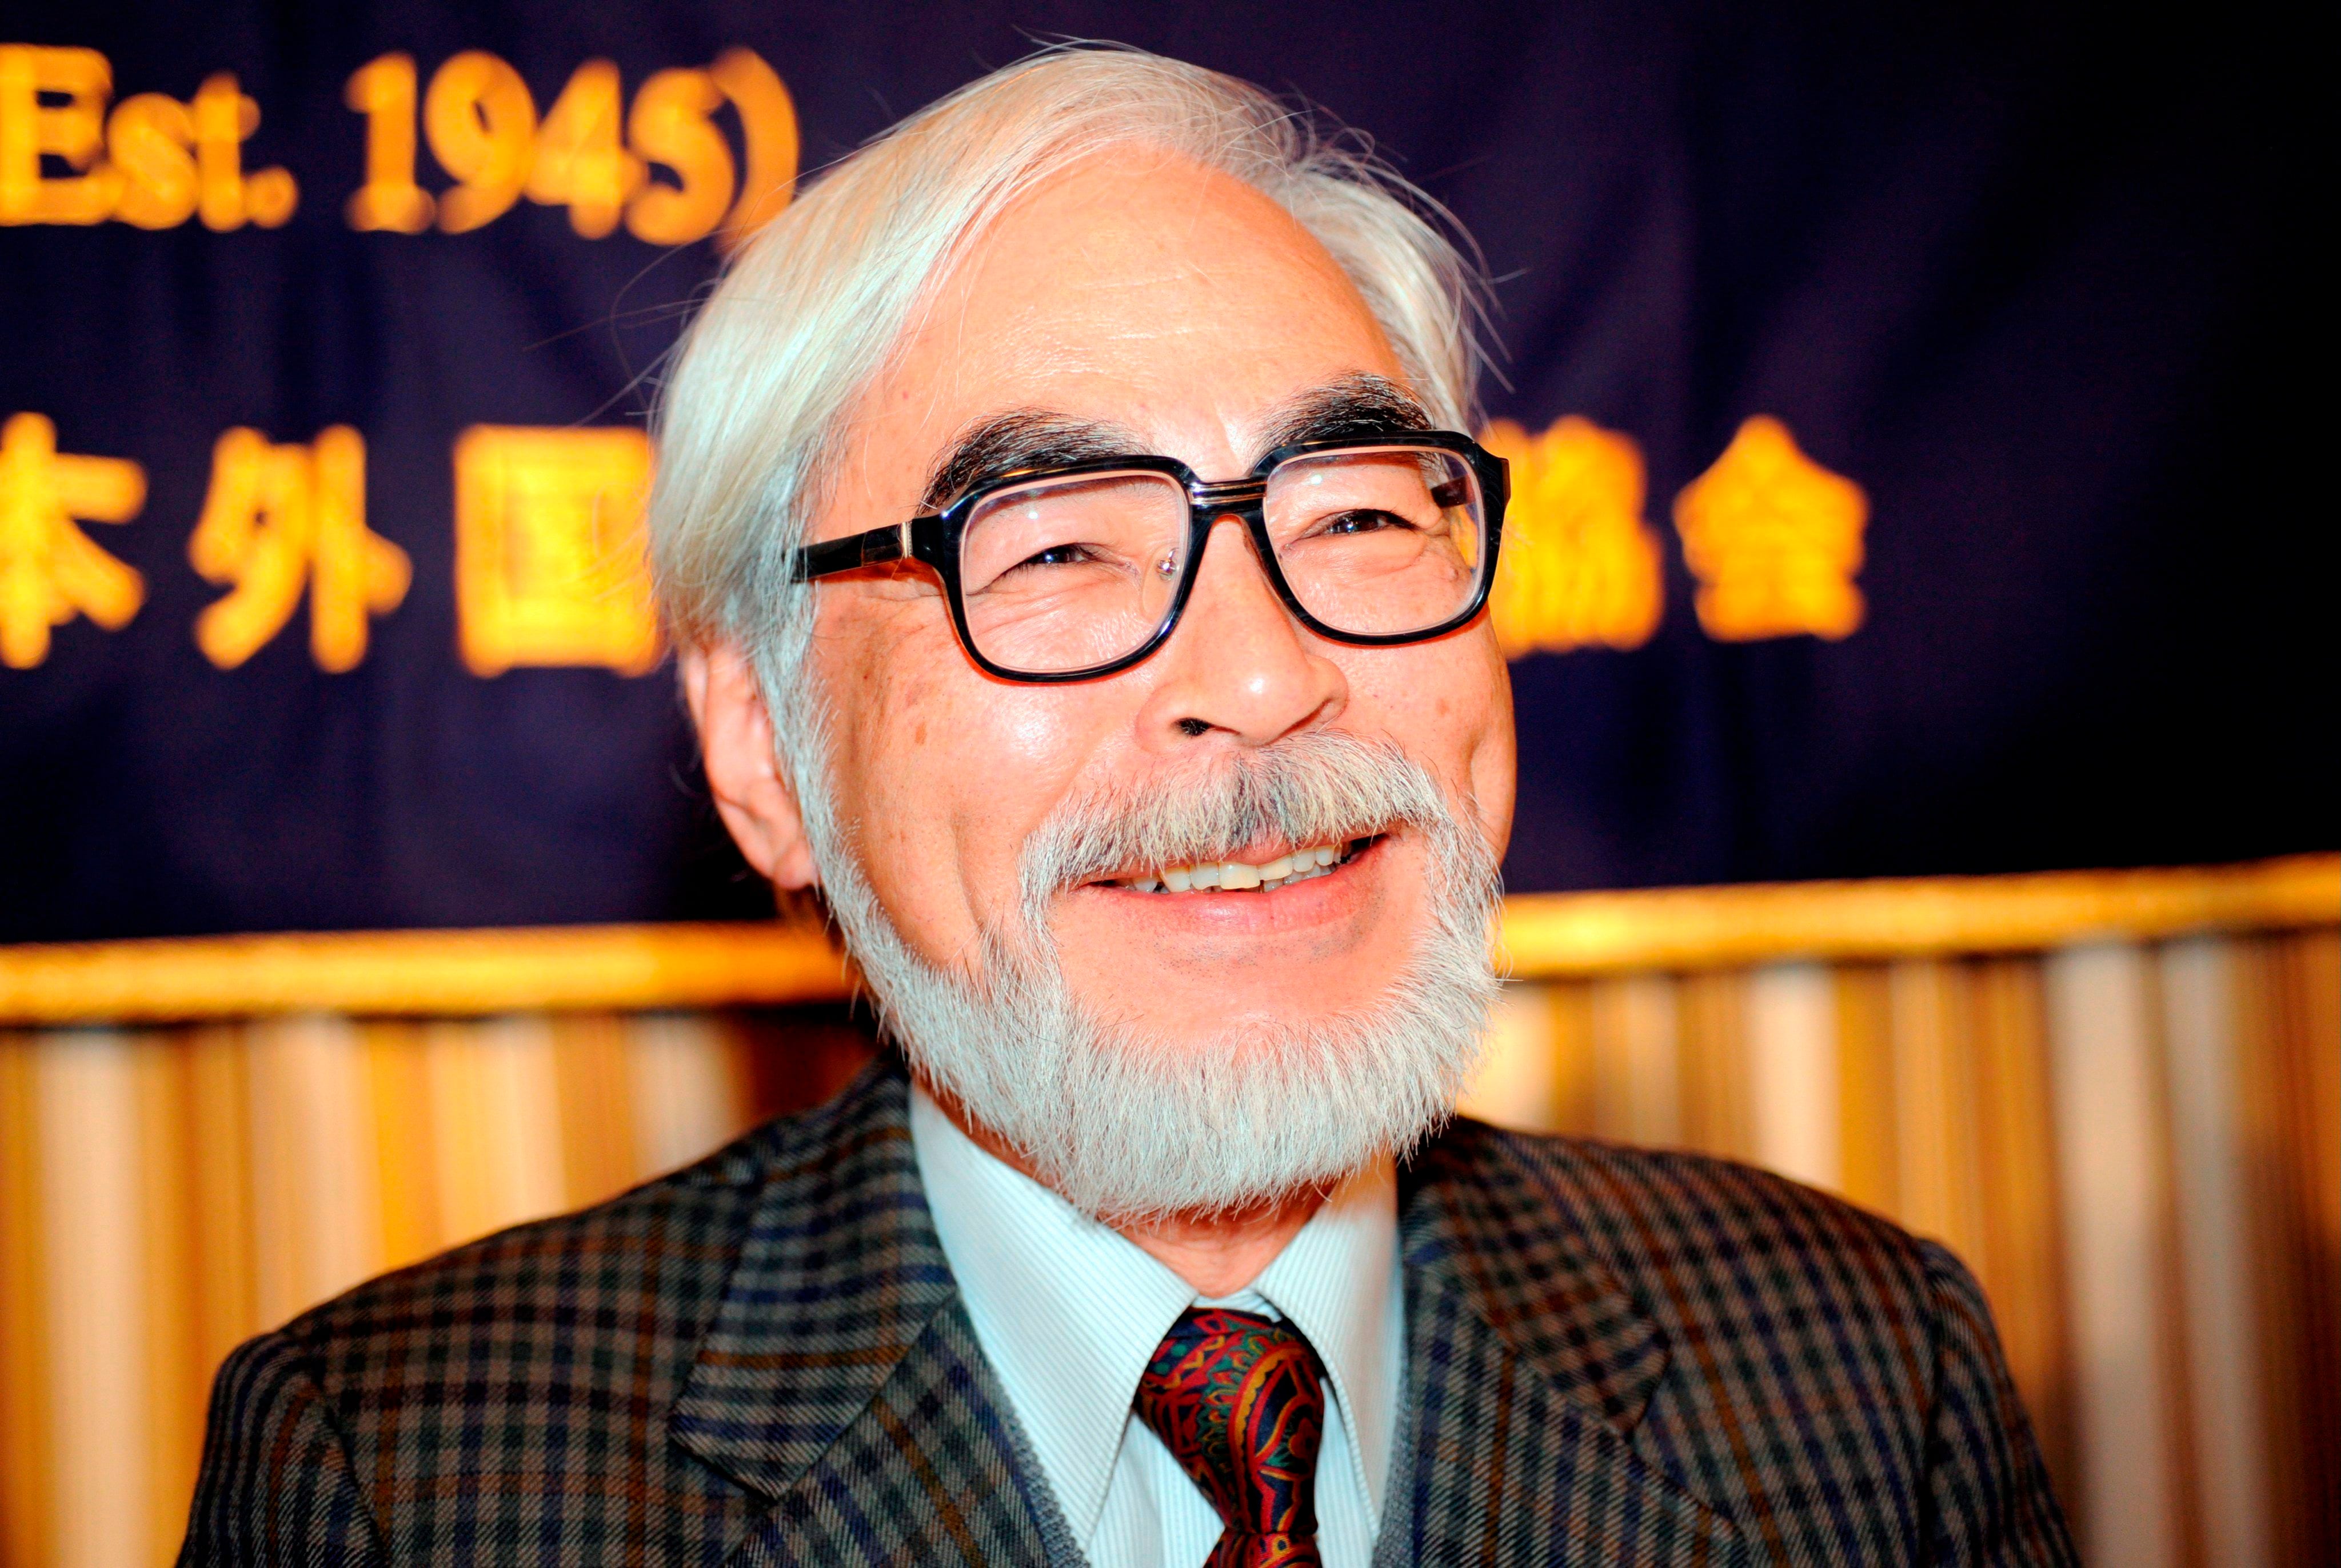 Con una carrera marcada por obras como "Spirited Away" y "Mi vecino Totoro", Miyazaki ha ganado renombre mundial en la industria de la animación (EFE/Everett Kennedy Brown)
